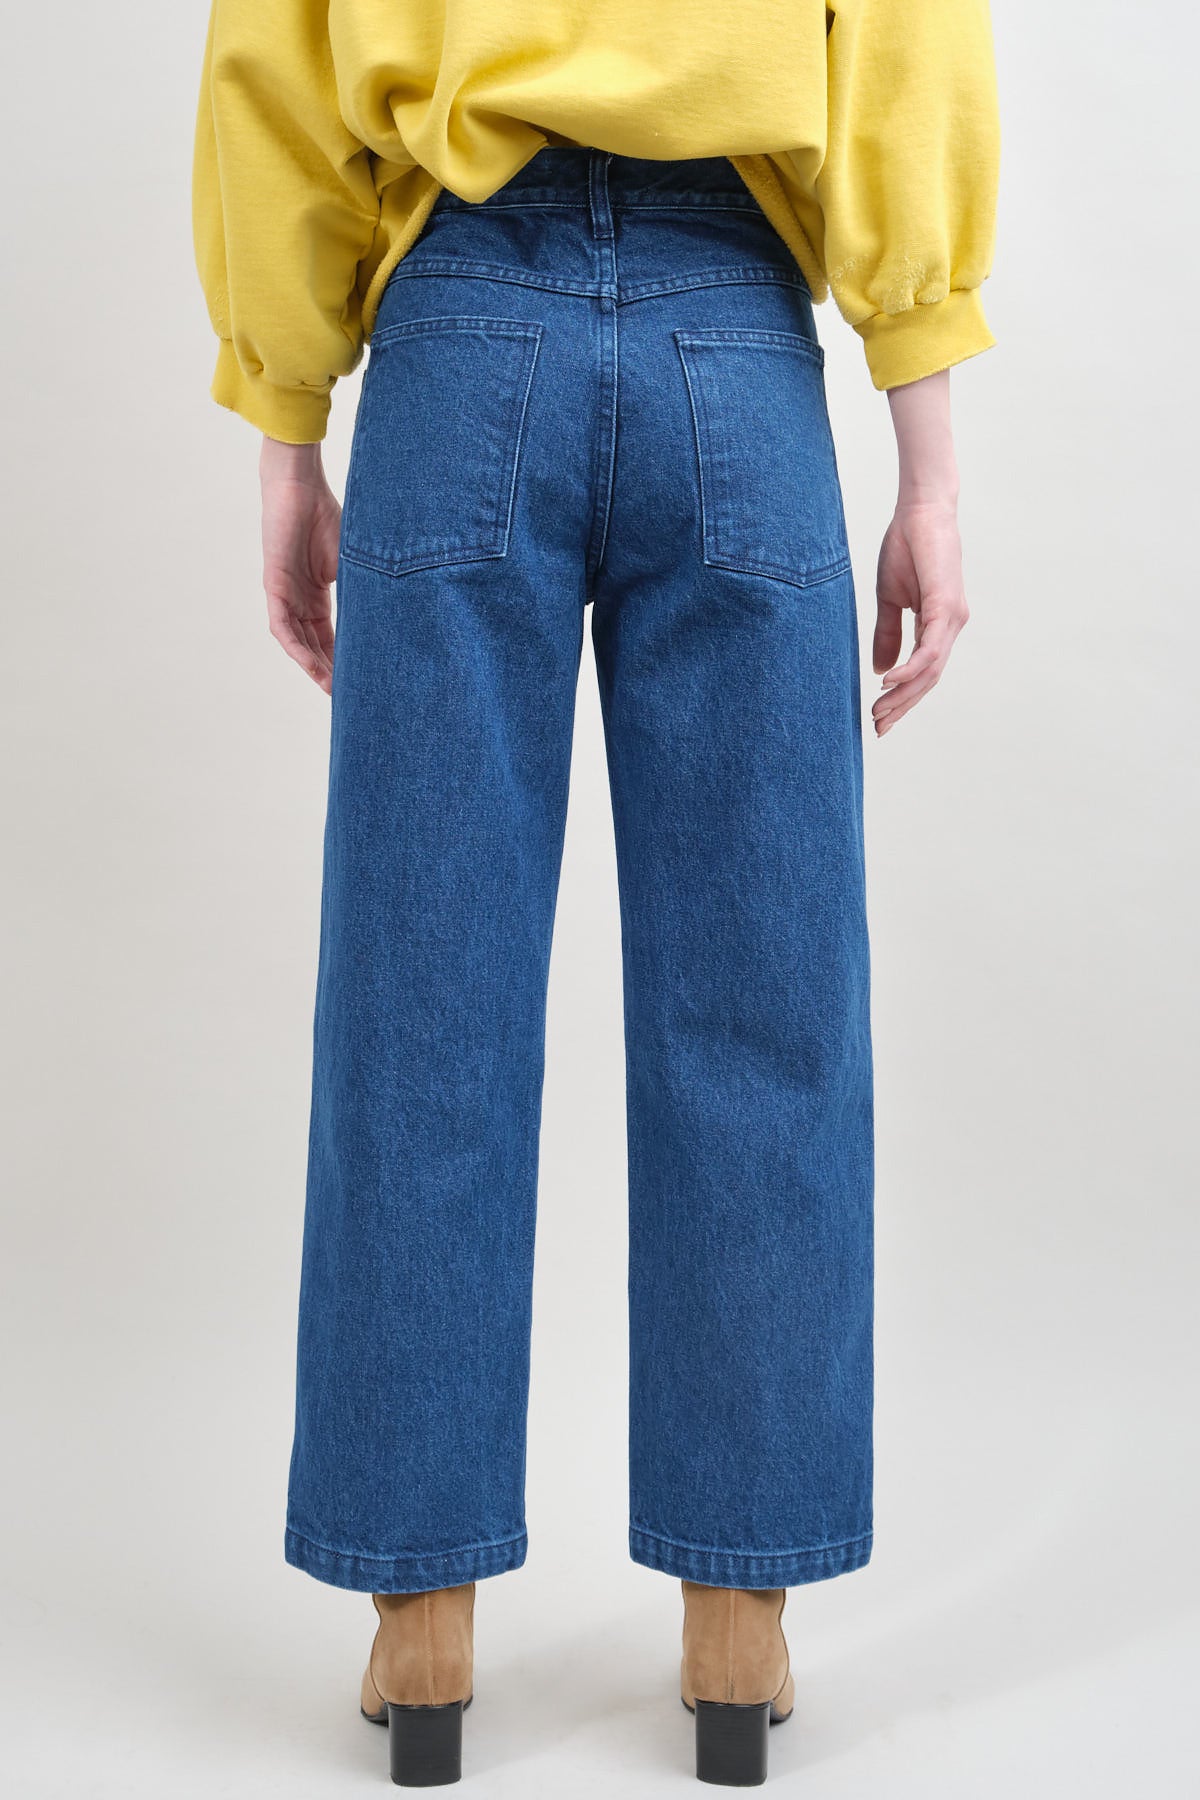 women's jeans carleen